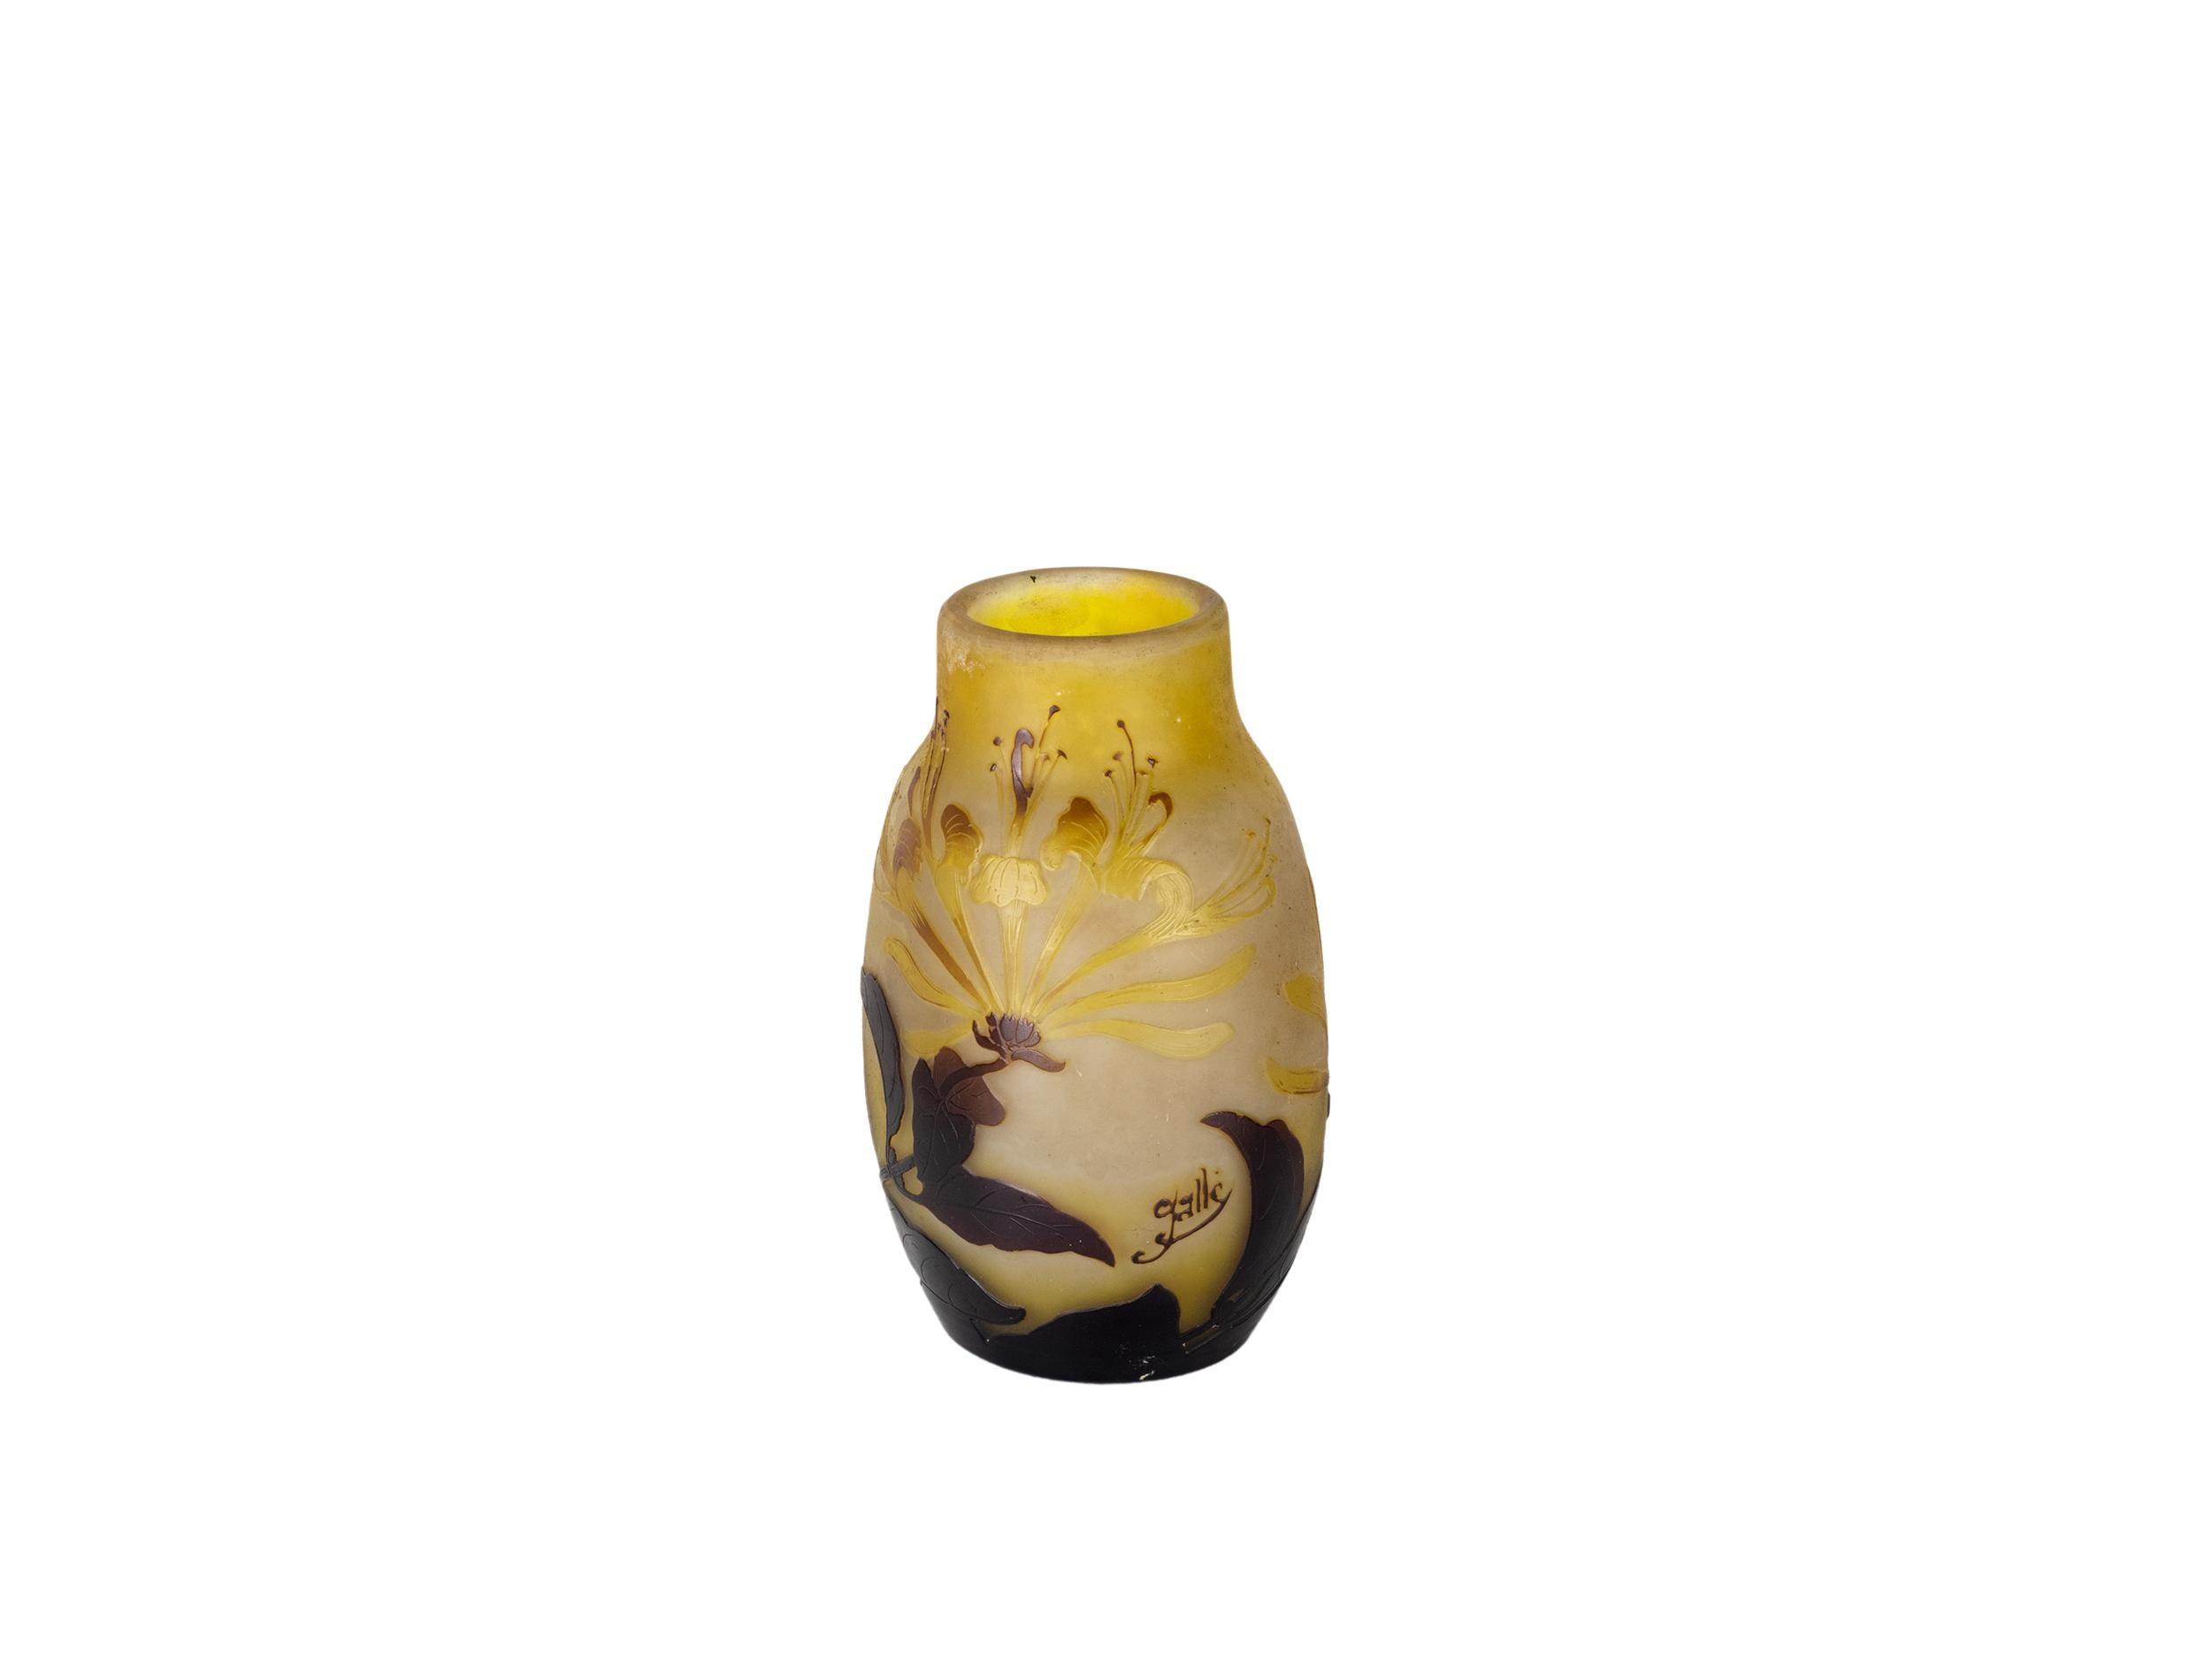 Beeindruckende Art Nouveau Emile Galle Cameo Landschaft Vase, in einem gelben Hintergrund und braun eingelegten Details aquatische Vegetation und Herbst Tonalität. 
Stellen Sie eine prächtige Fuschia-Blüte in ihrer ganzen Pracht und bei perfekten